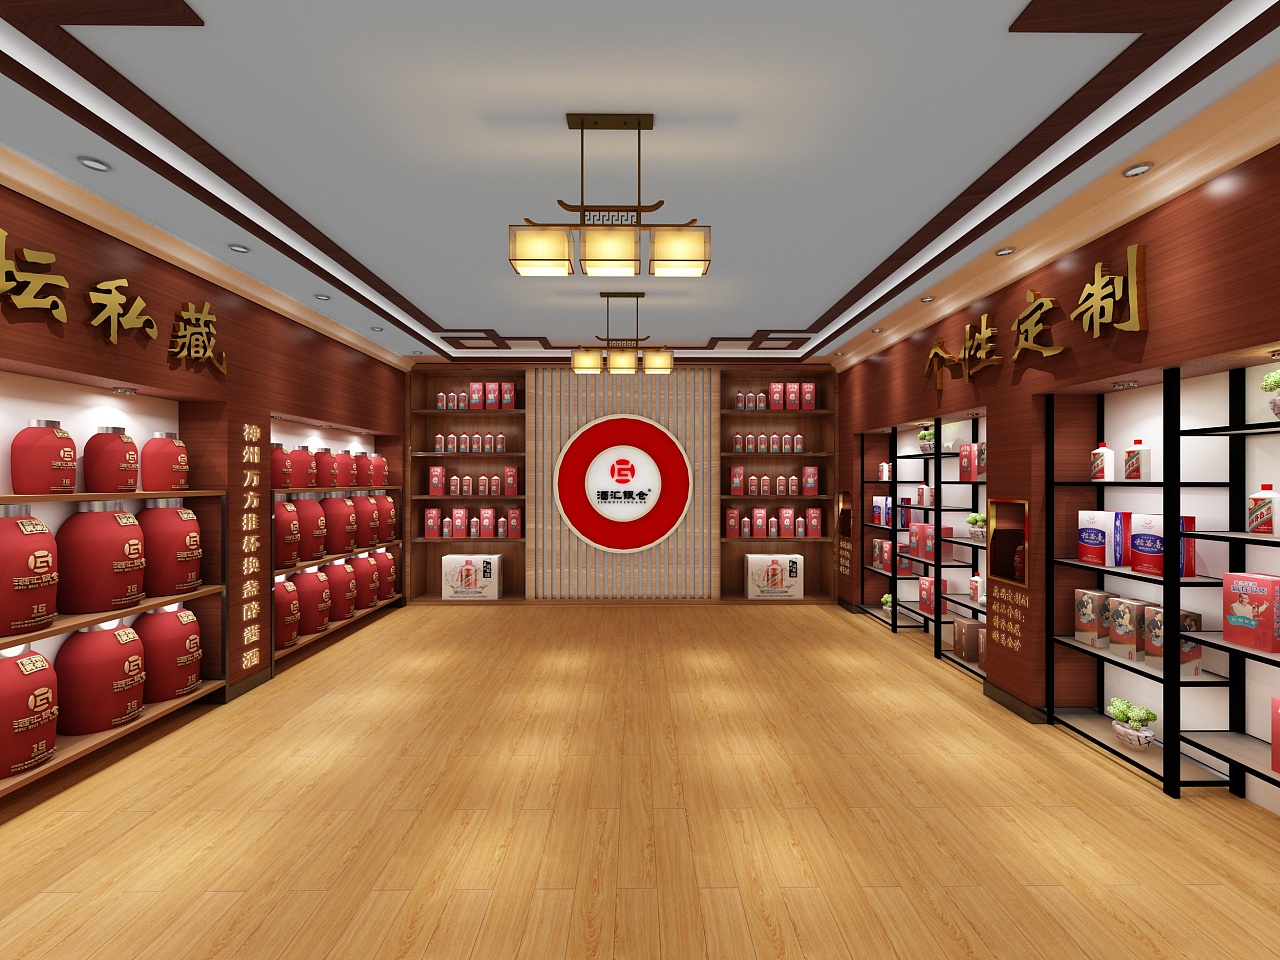 球场边的装备店—— 酷锐足球杭州滨江店正式开业！